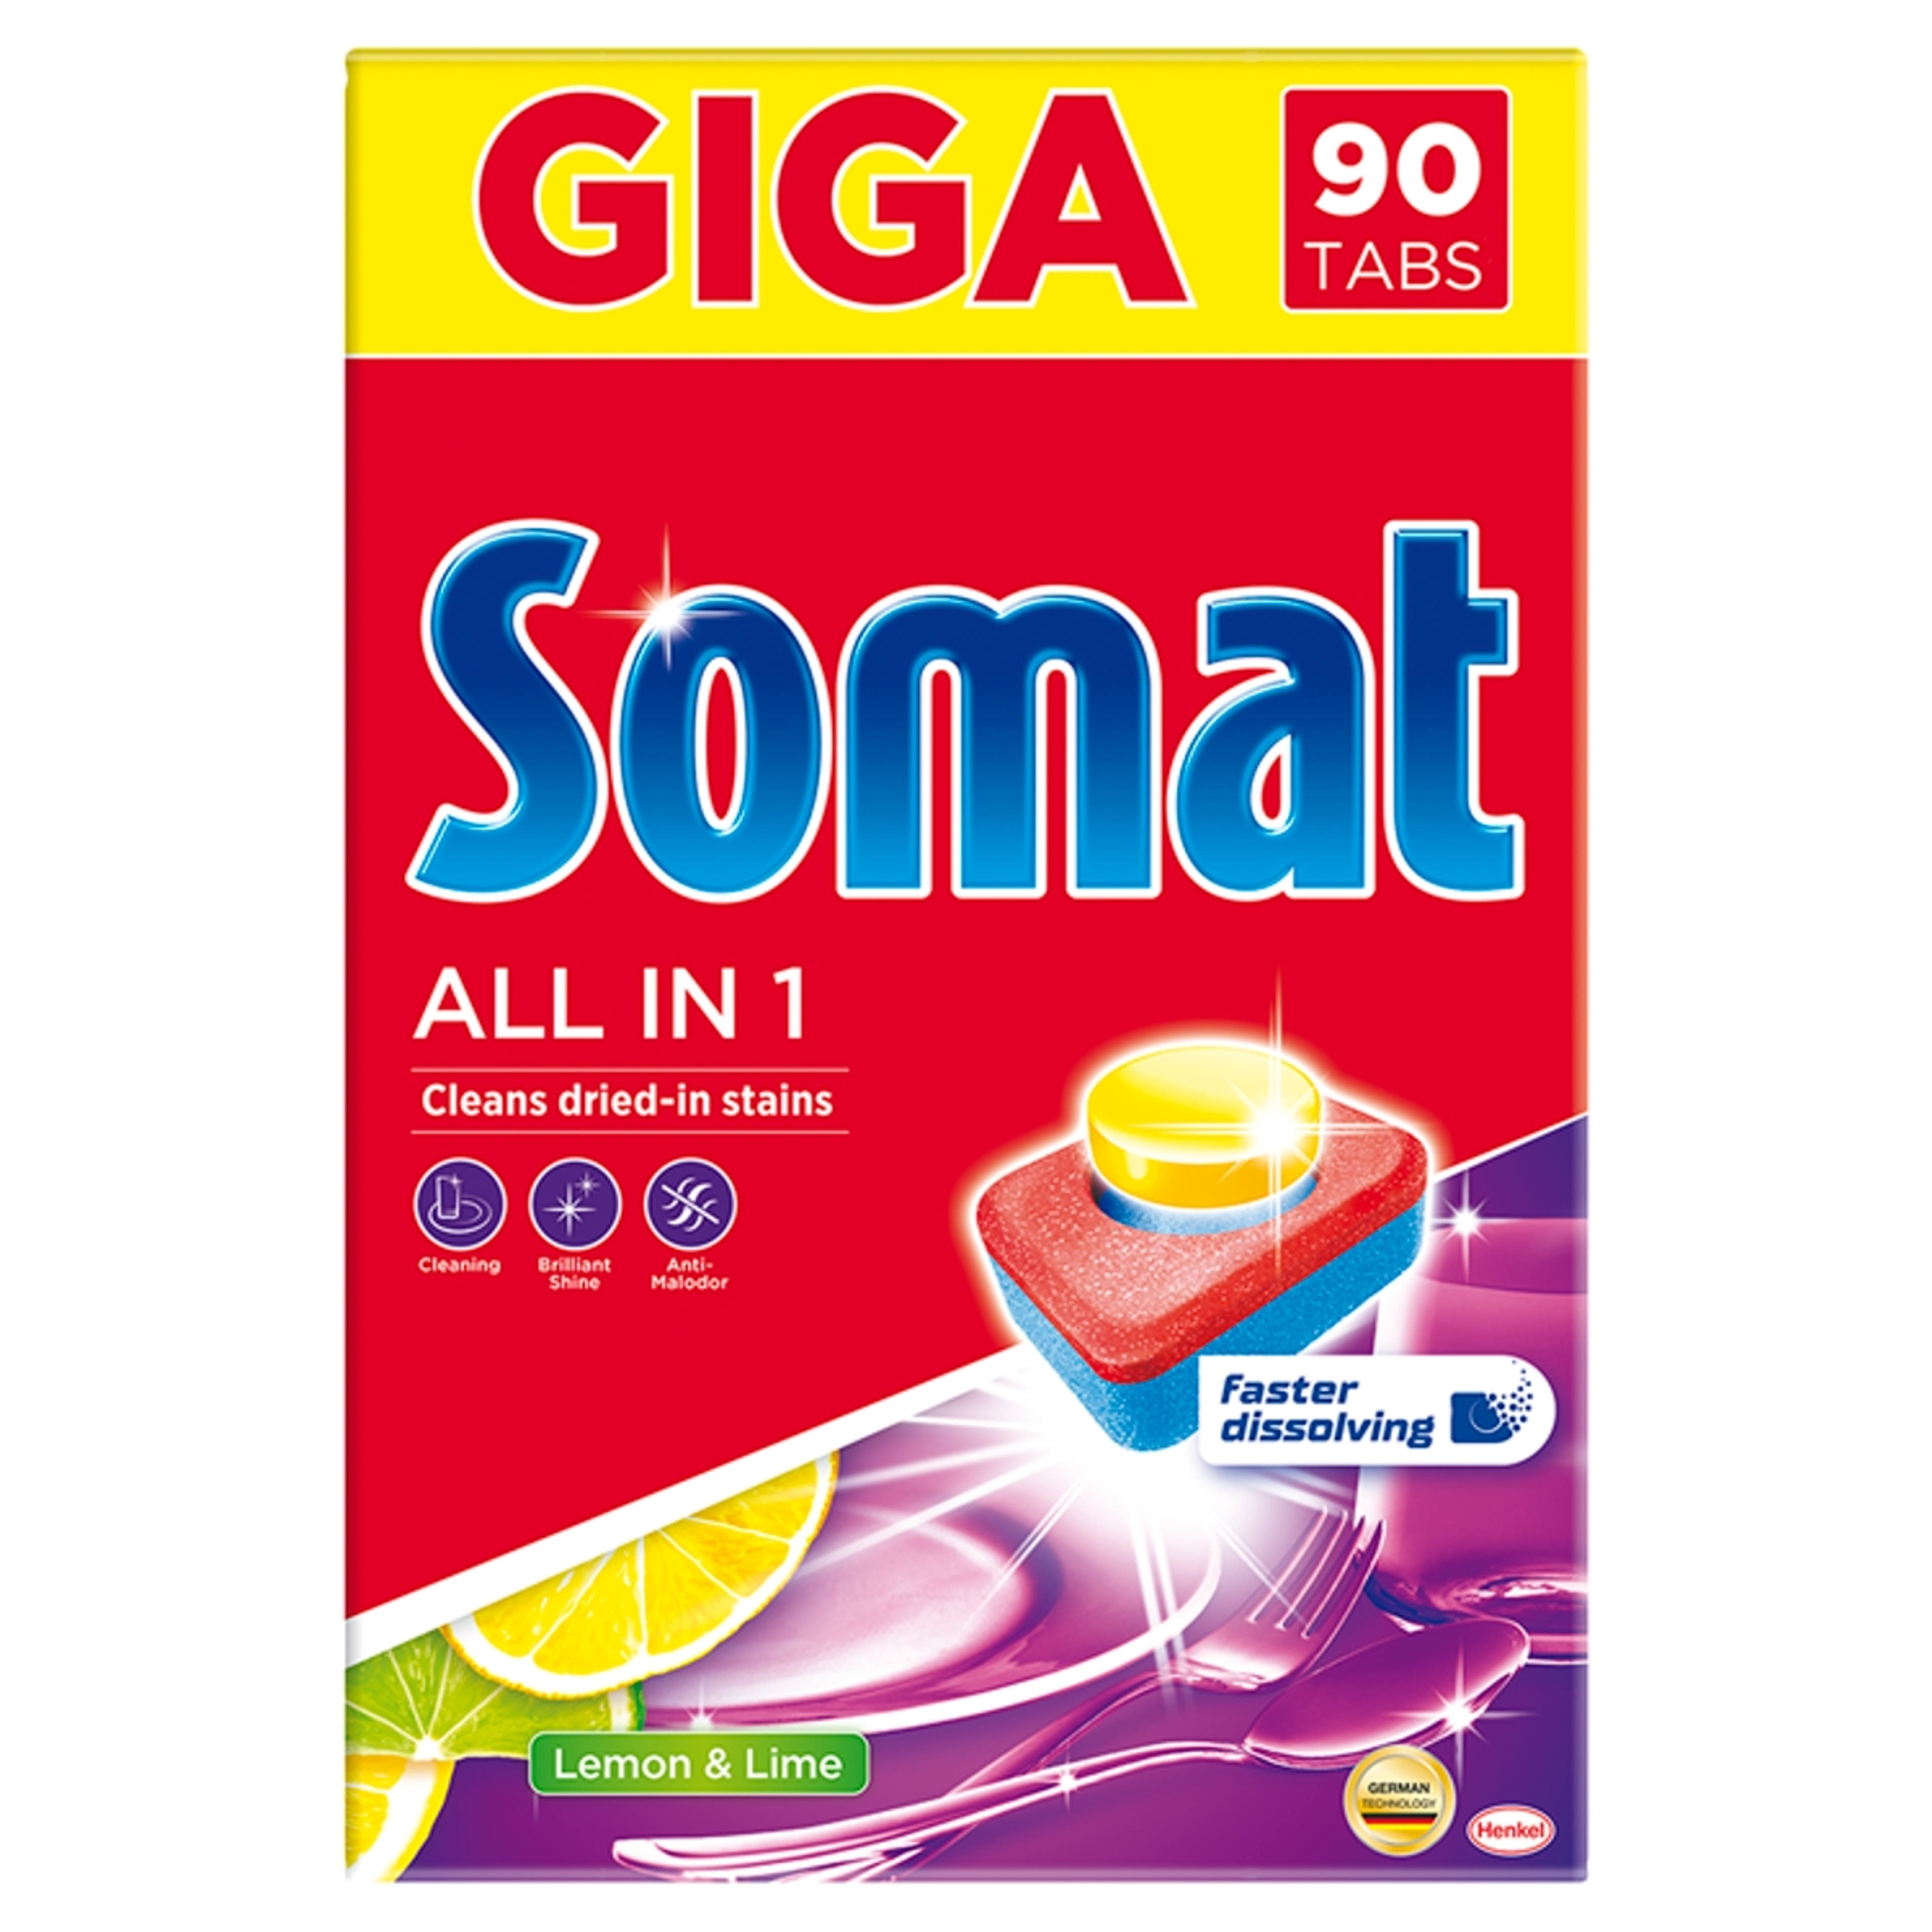 Somat All in 1 Lemon & Lime gépi mosogatógép tabletta, 90 mosás - 90 db